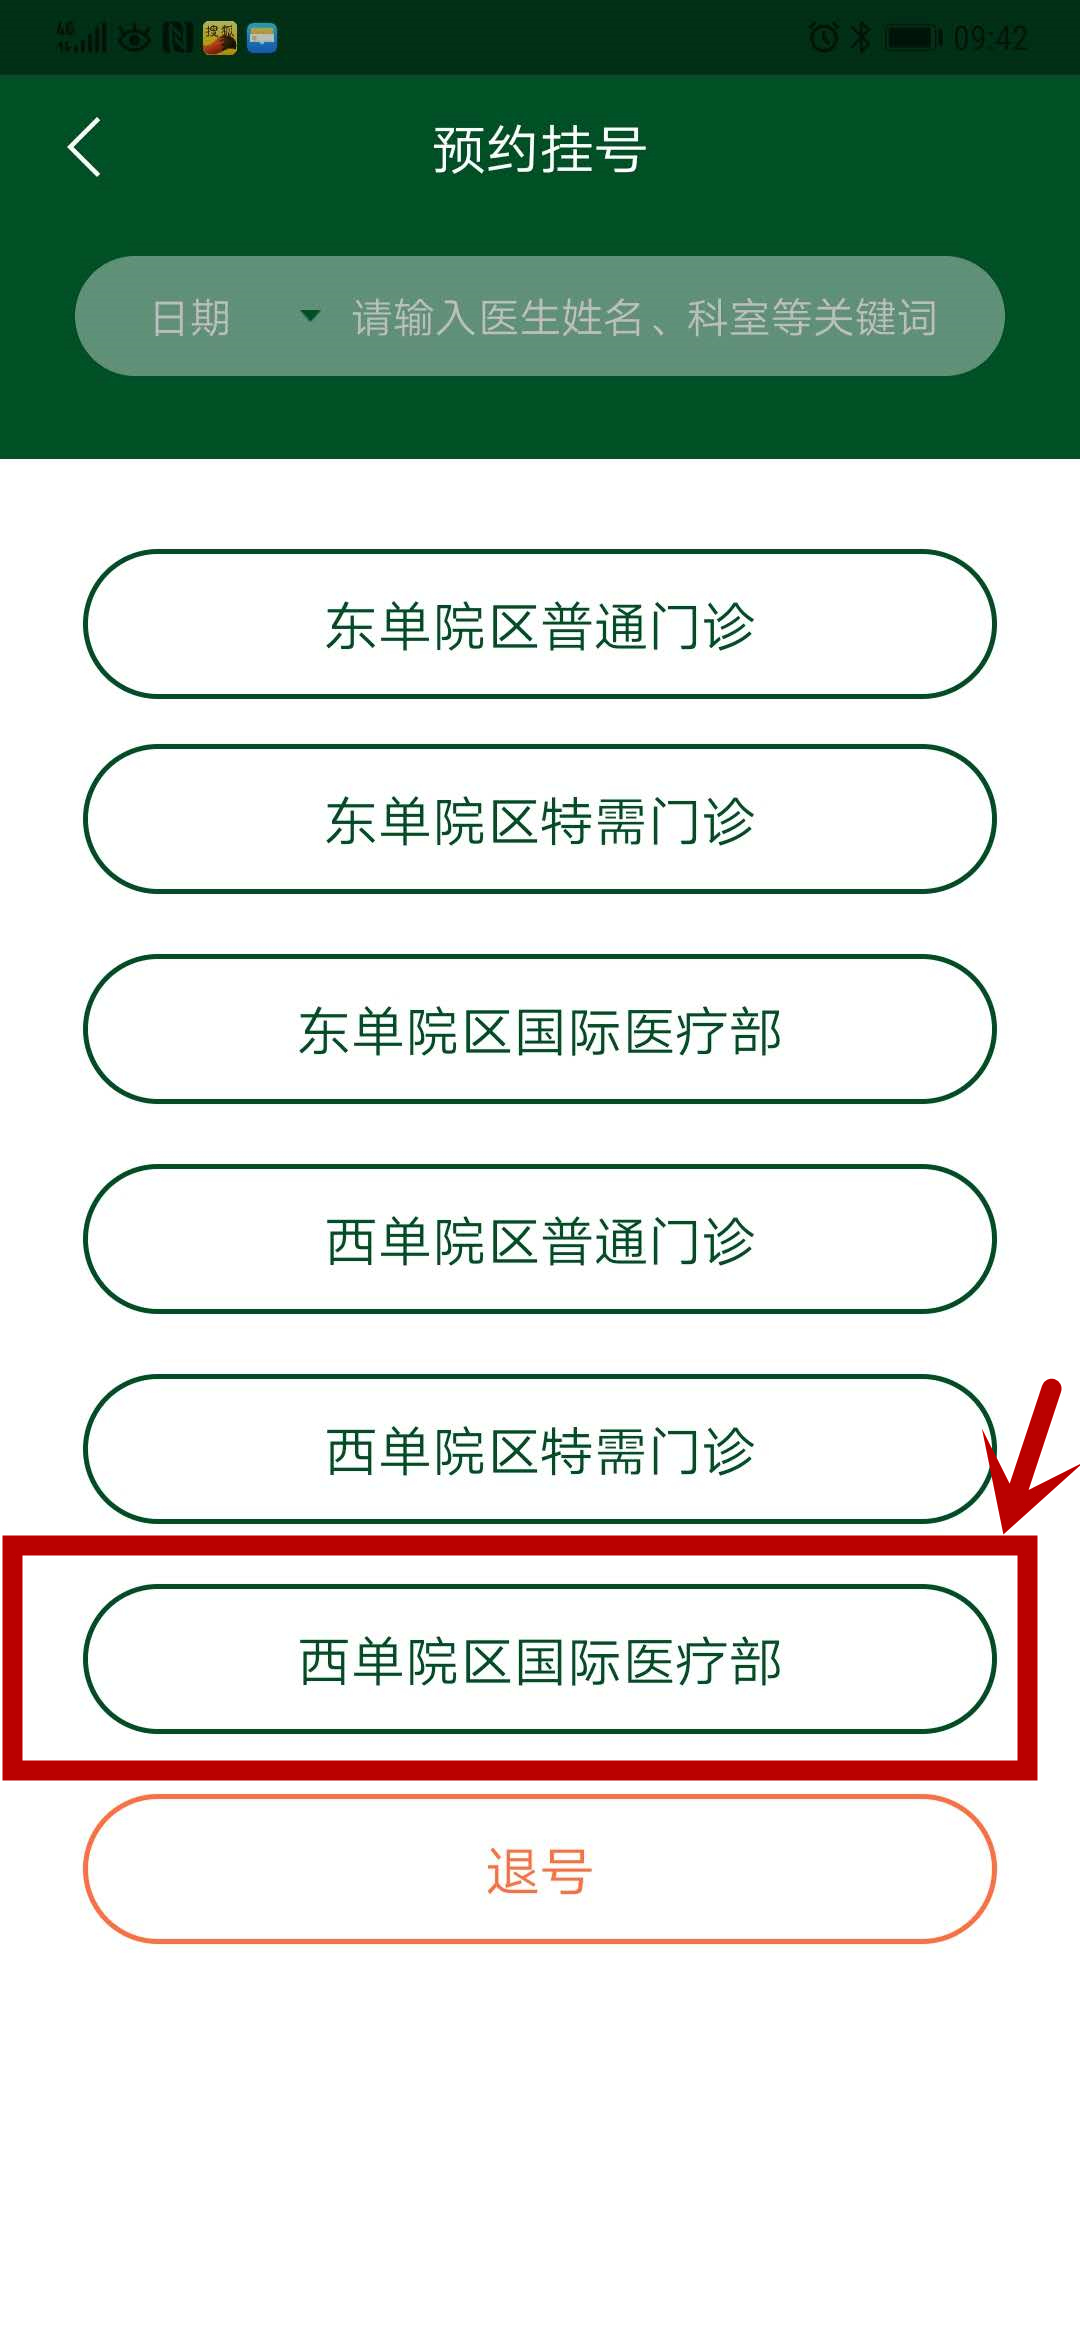 关于北京口腔医院线上如何挂号代挂陪诊就医的信息